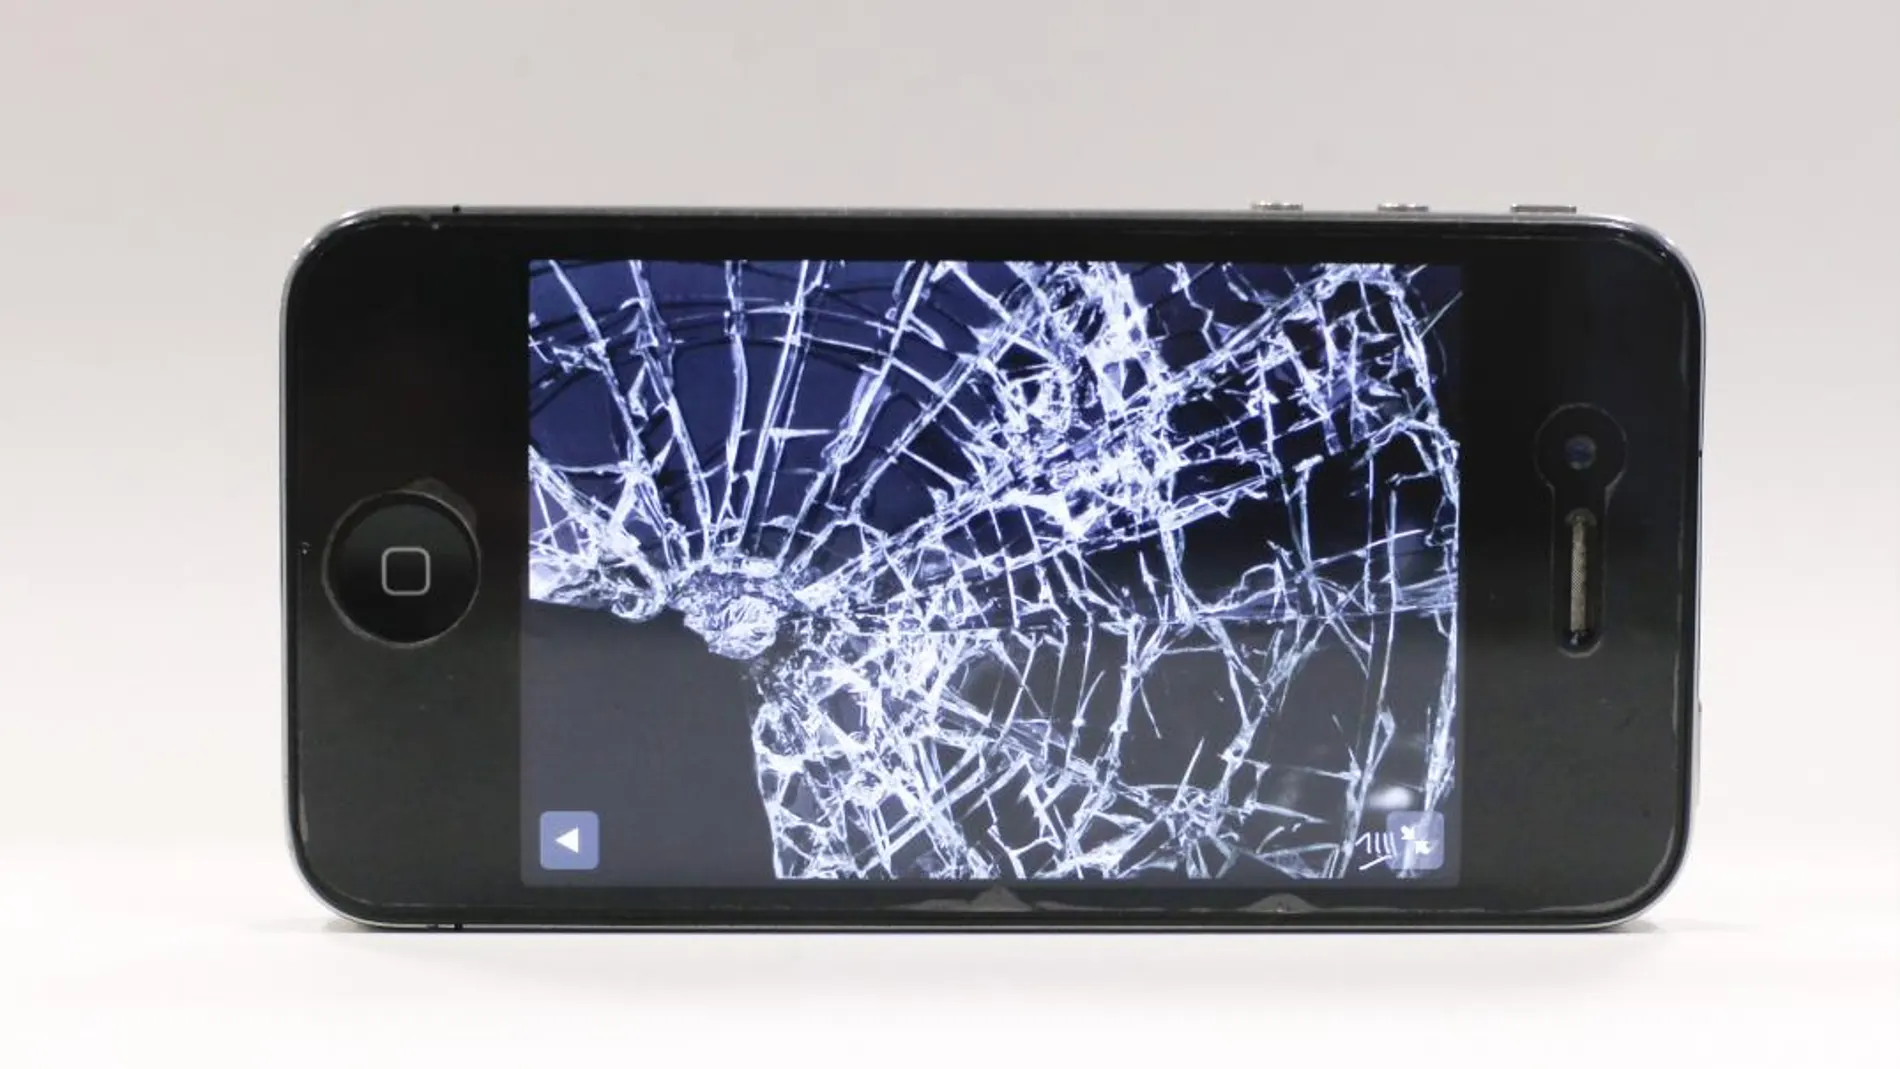 La rotura del cristal del móvil por caídas es una pesadilla para los propietarios de estos dispositivos